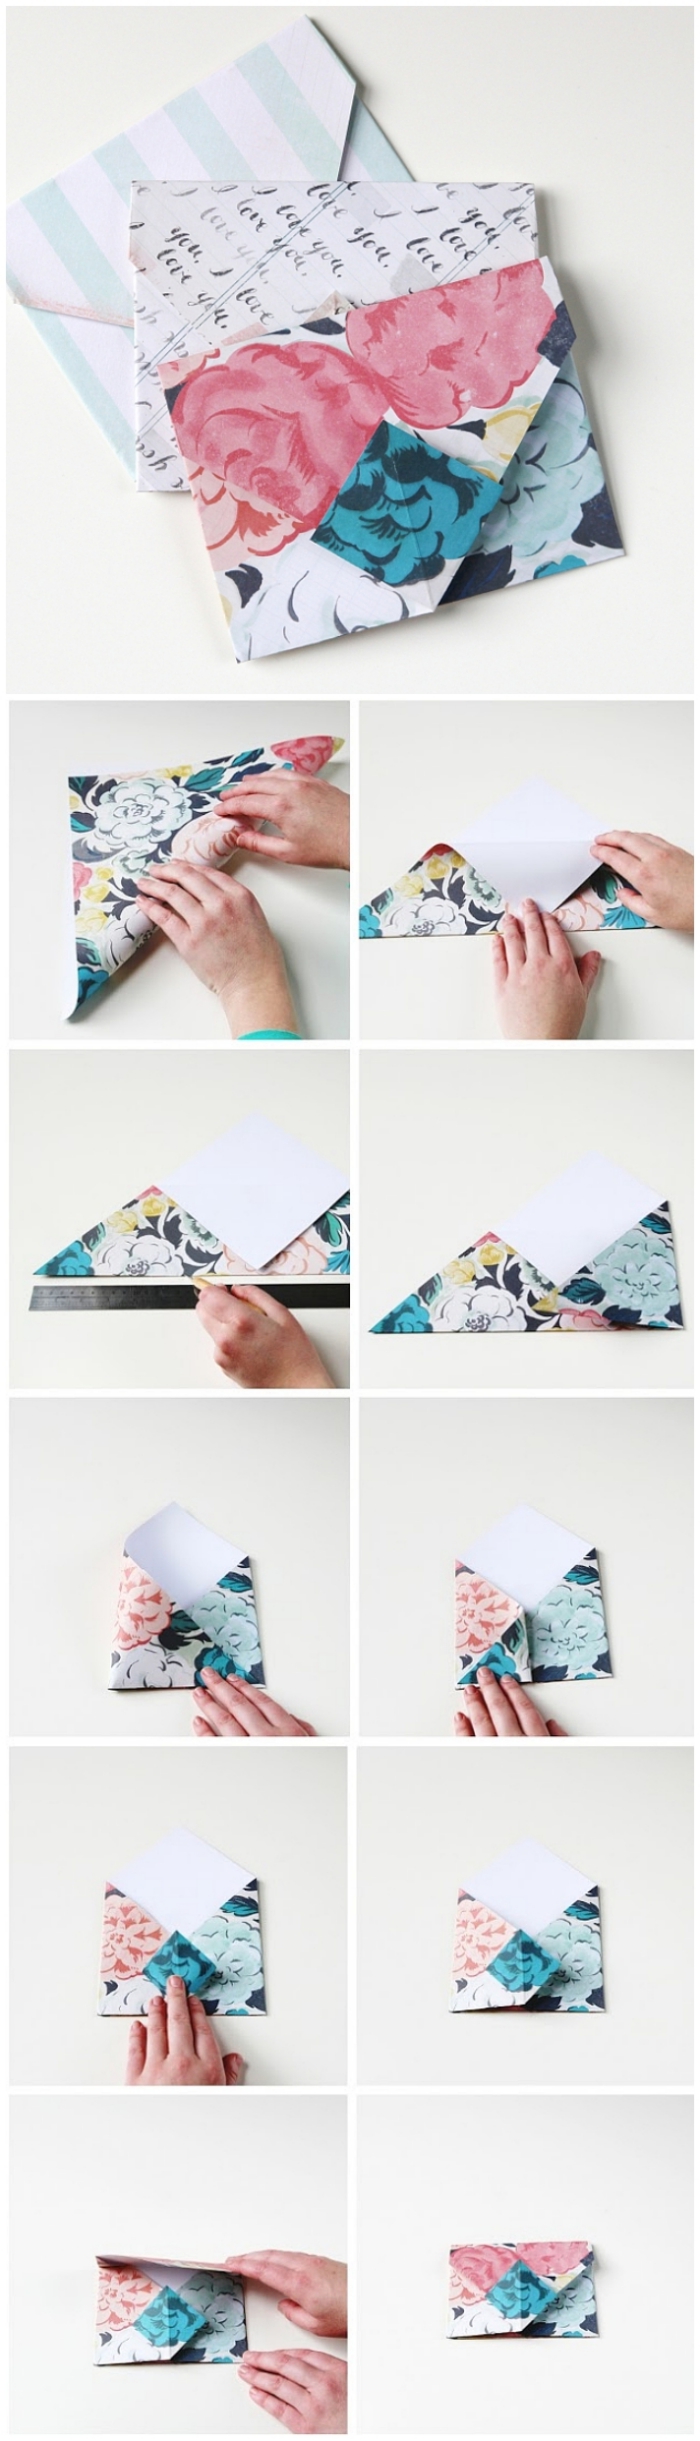 la technique de pliage enveloppe expliquée en photos, mini-enveloppe traditionnelle origami pour une carte de voeux personnalisée ou un bon cadeau